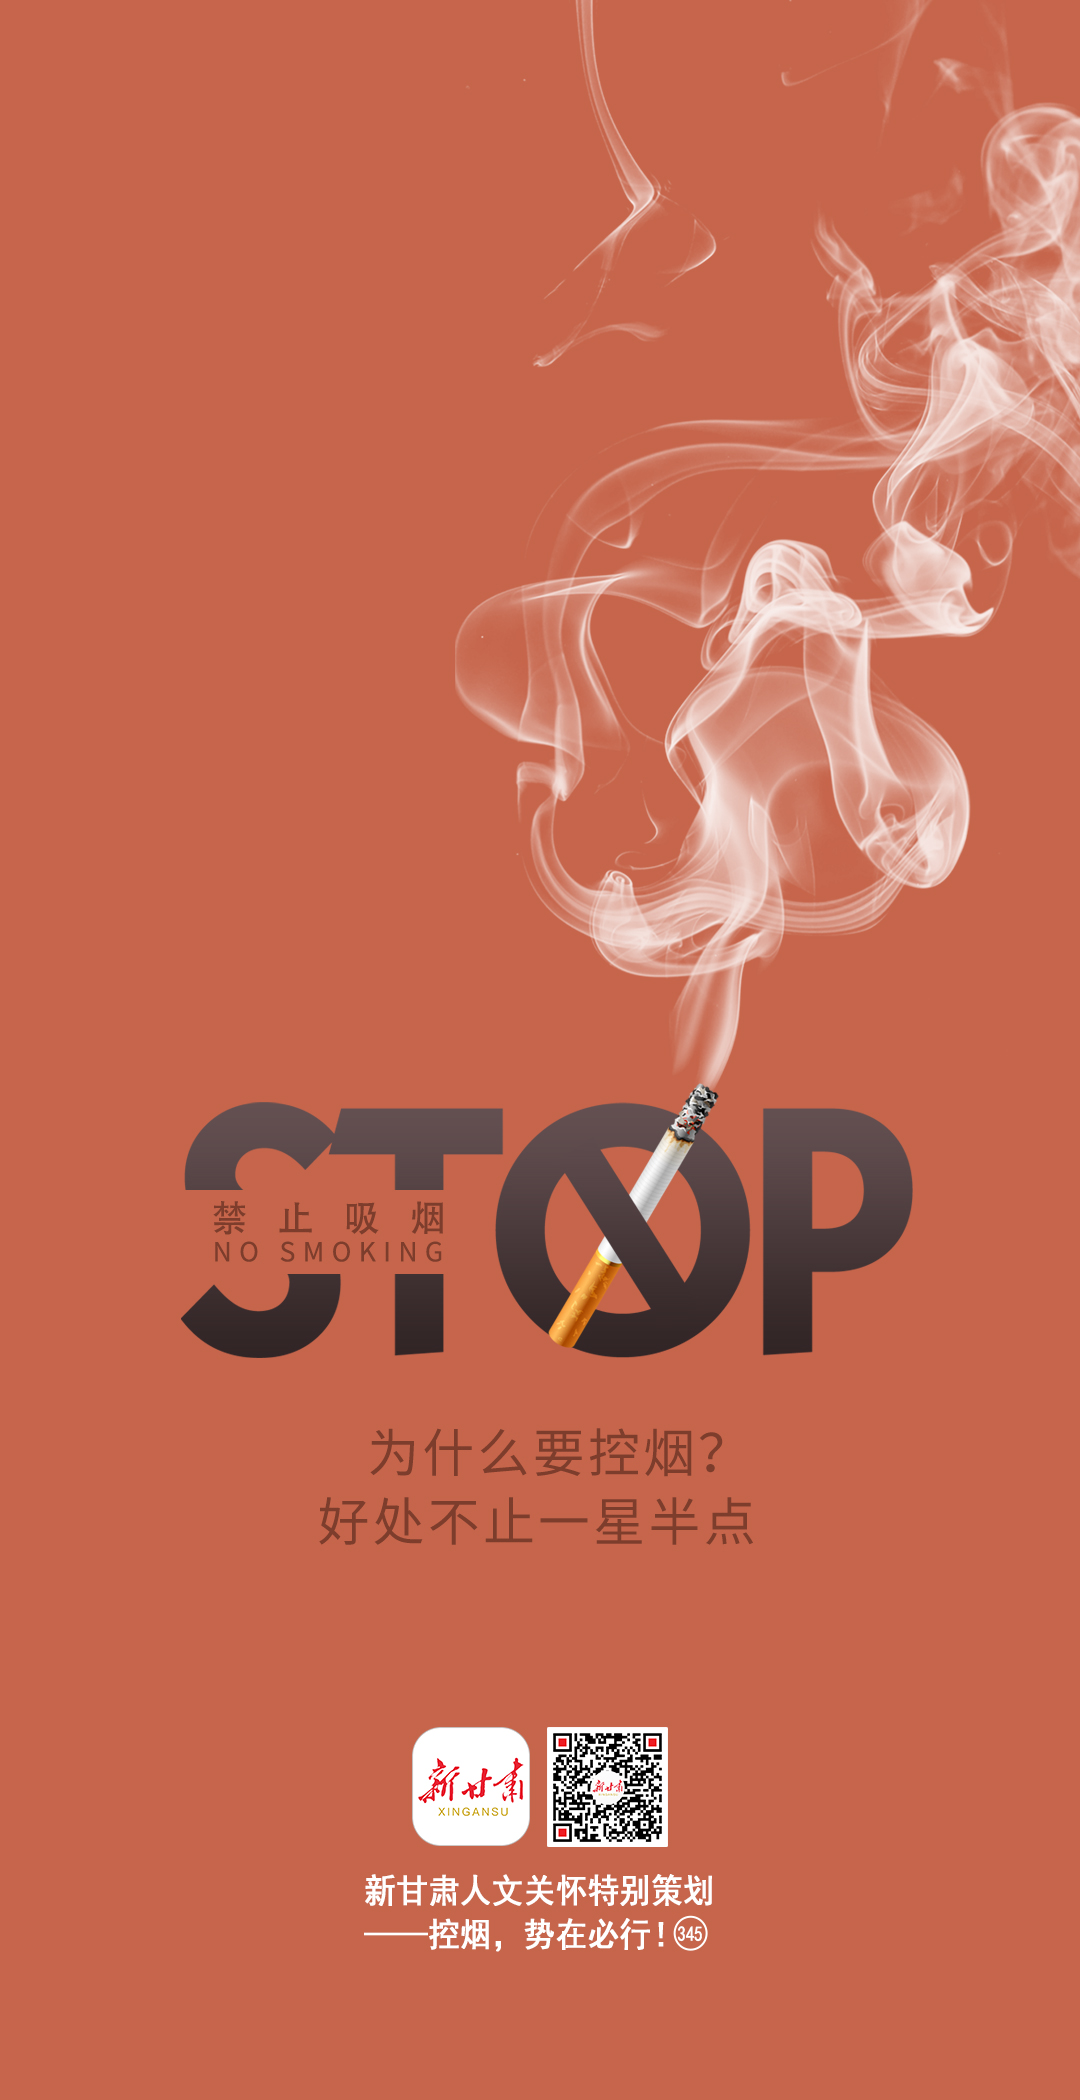 禁烟宣传文案图片